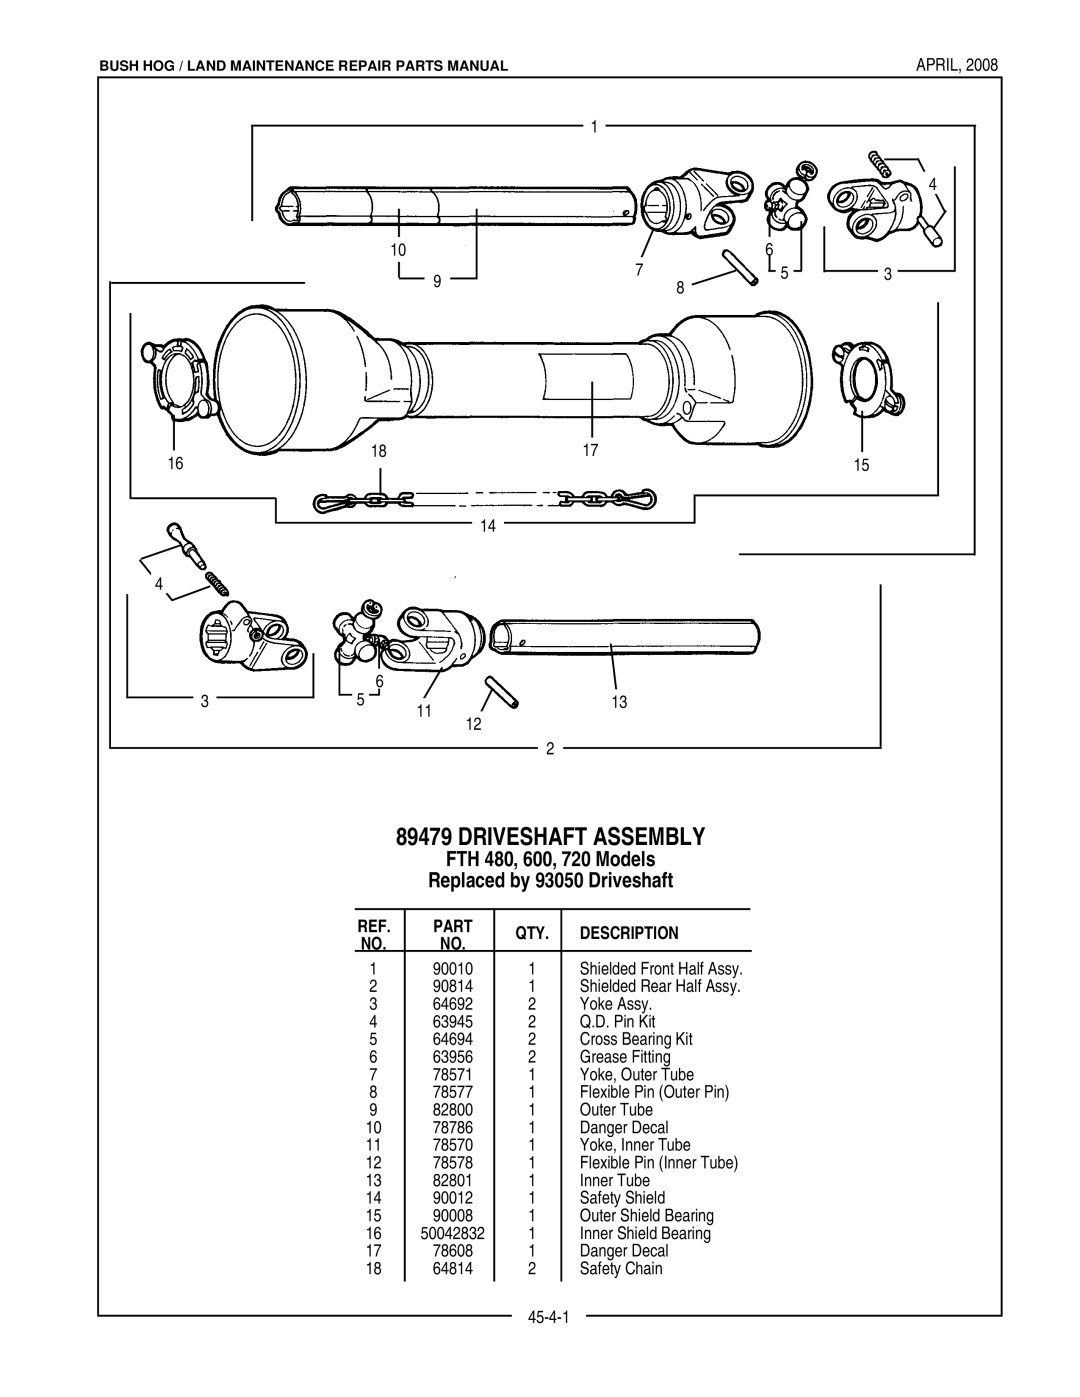 Bush Hog manual Driveshaft Assembly, FTH 480, 600, 720 Models, Replaced by 93050 Driveshaft, Description 